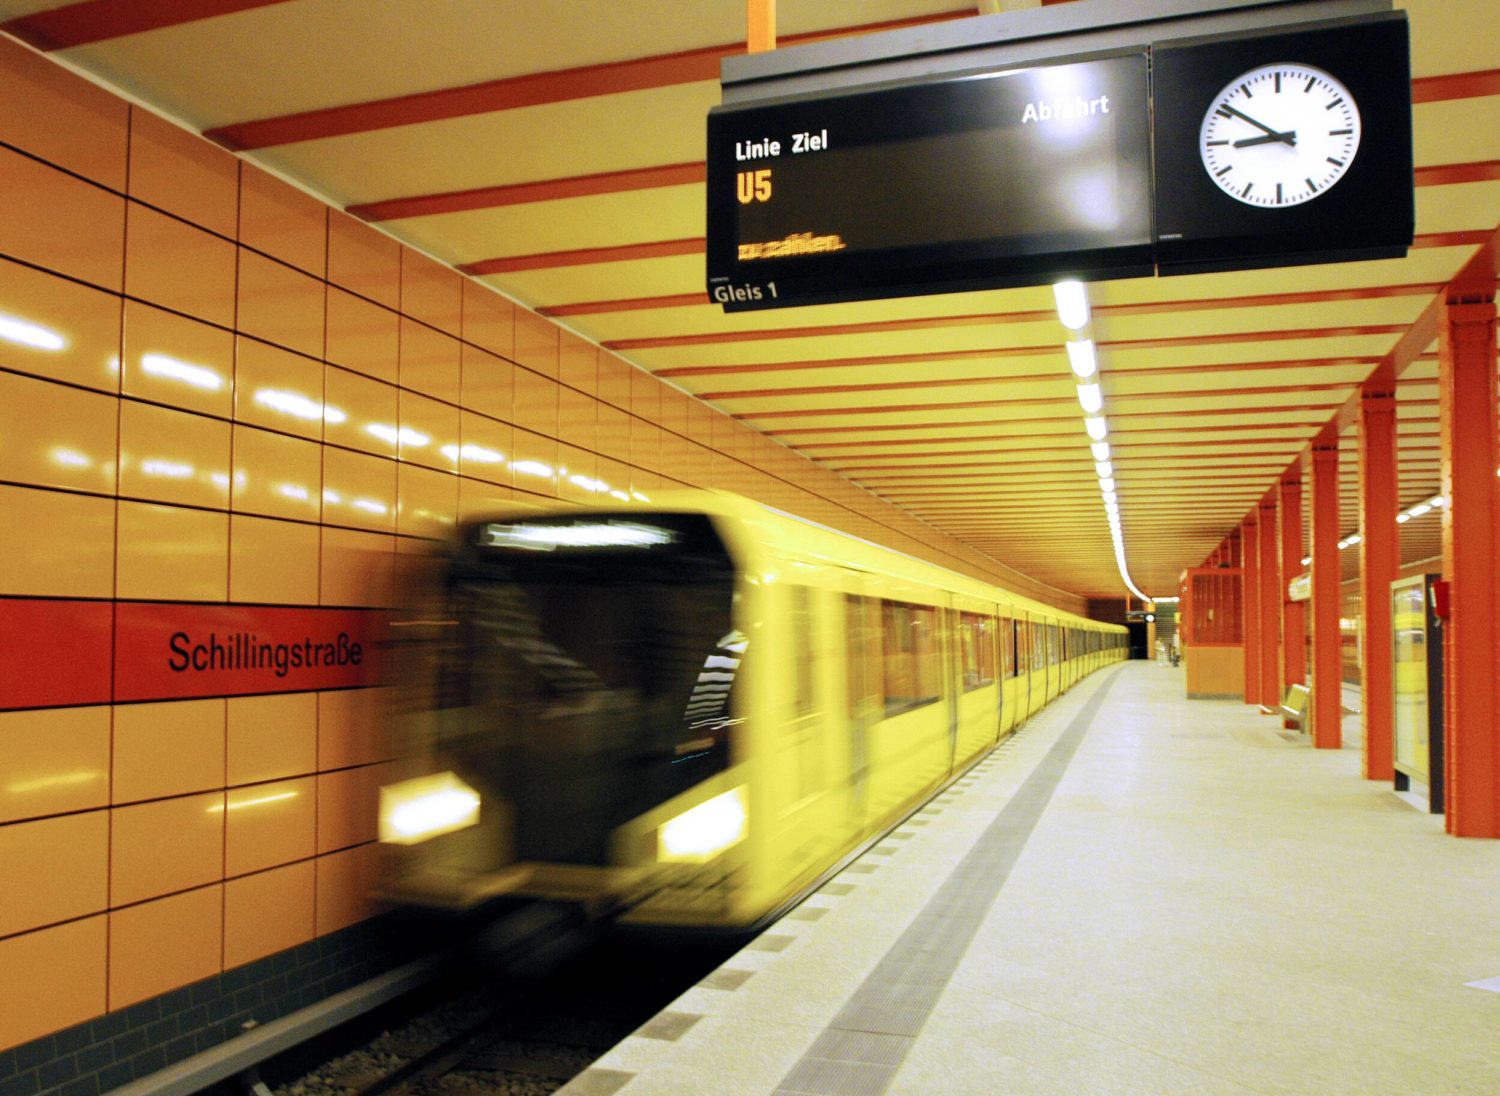 Aussteigen und Handys bereithalten: Am U5-Bahnhof Schillingstraße findet ihr Postkartenmotive. Foto: Imago Images/Enters